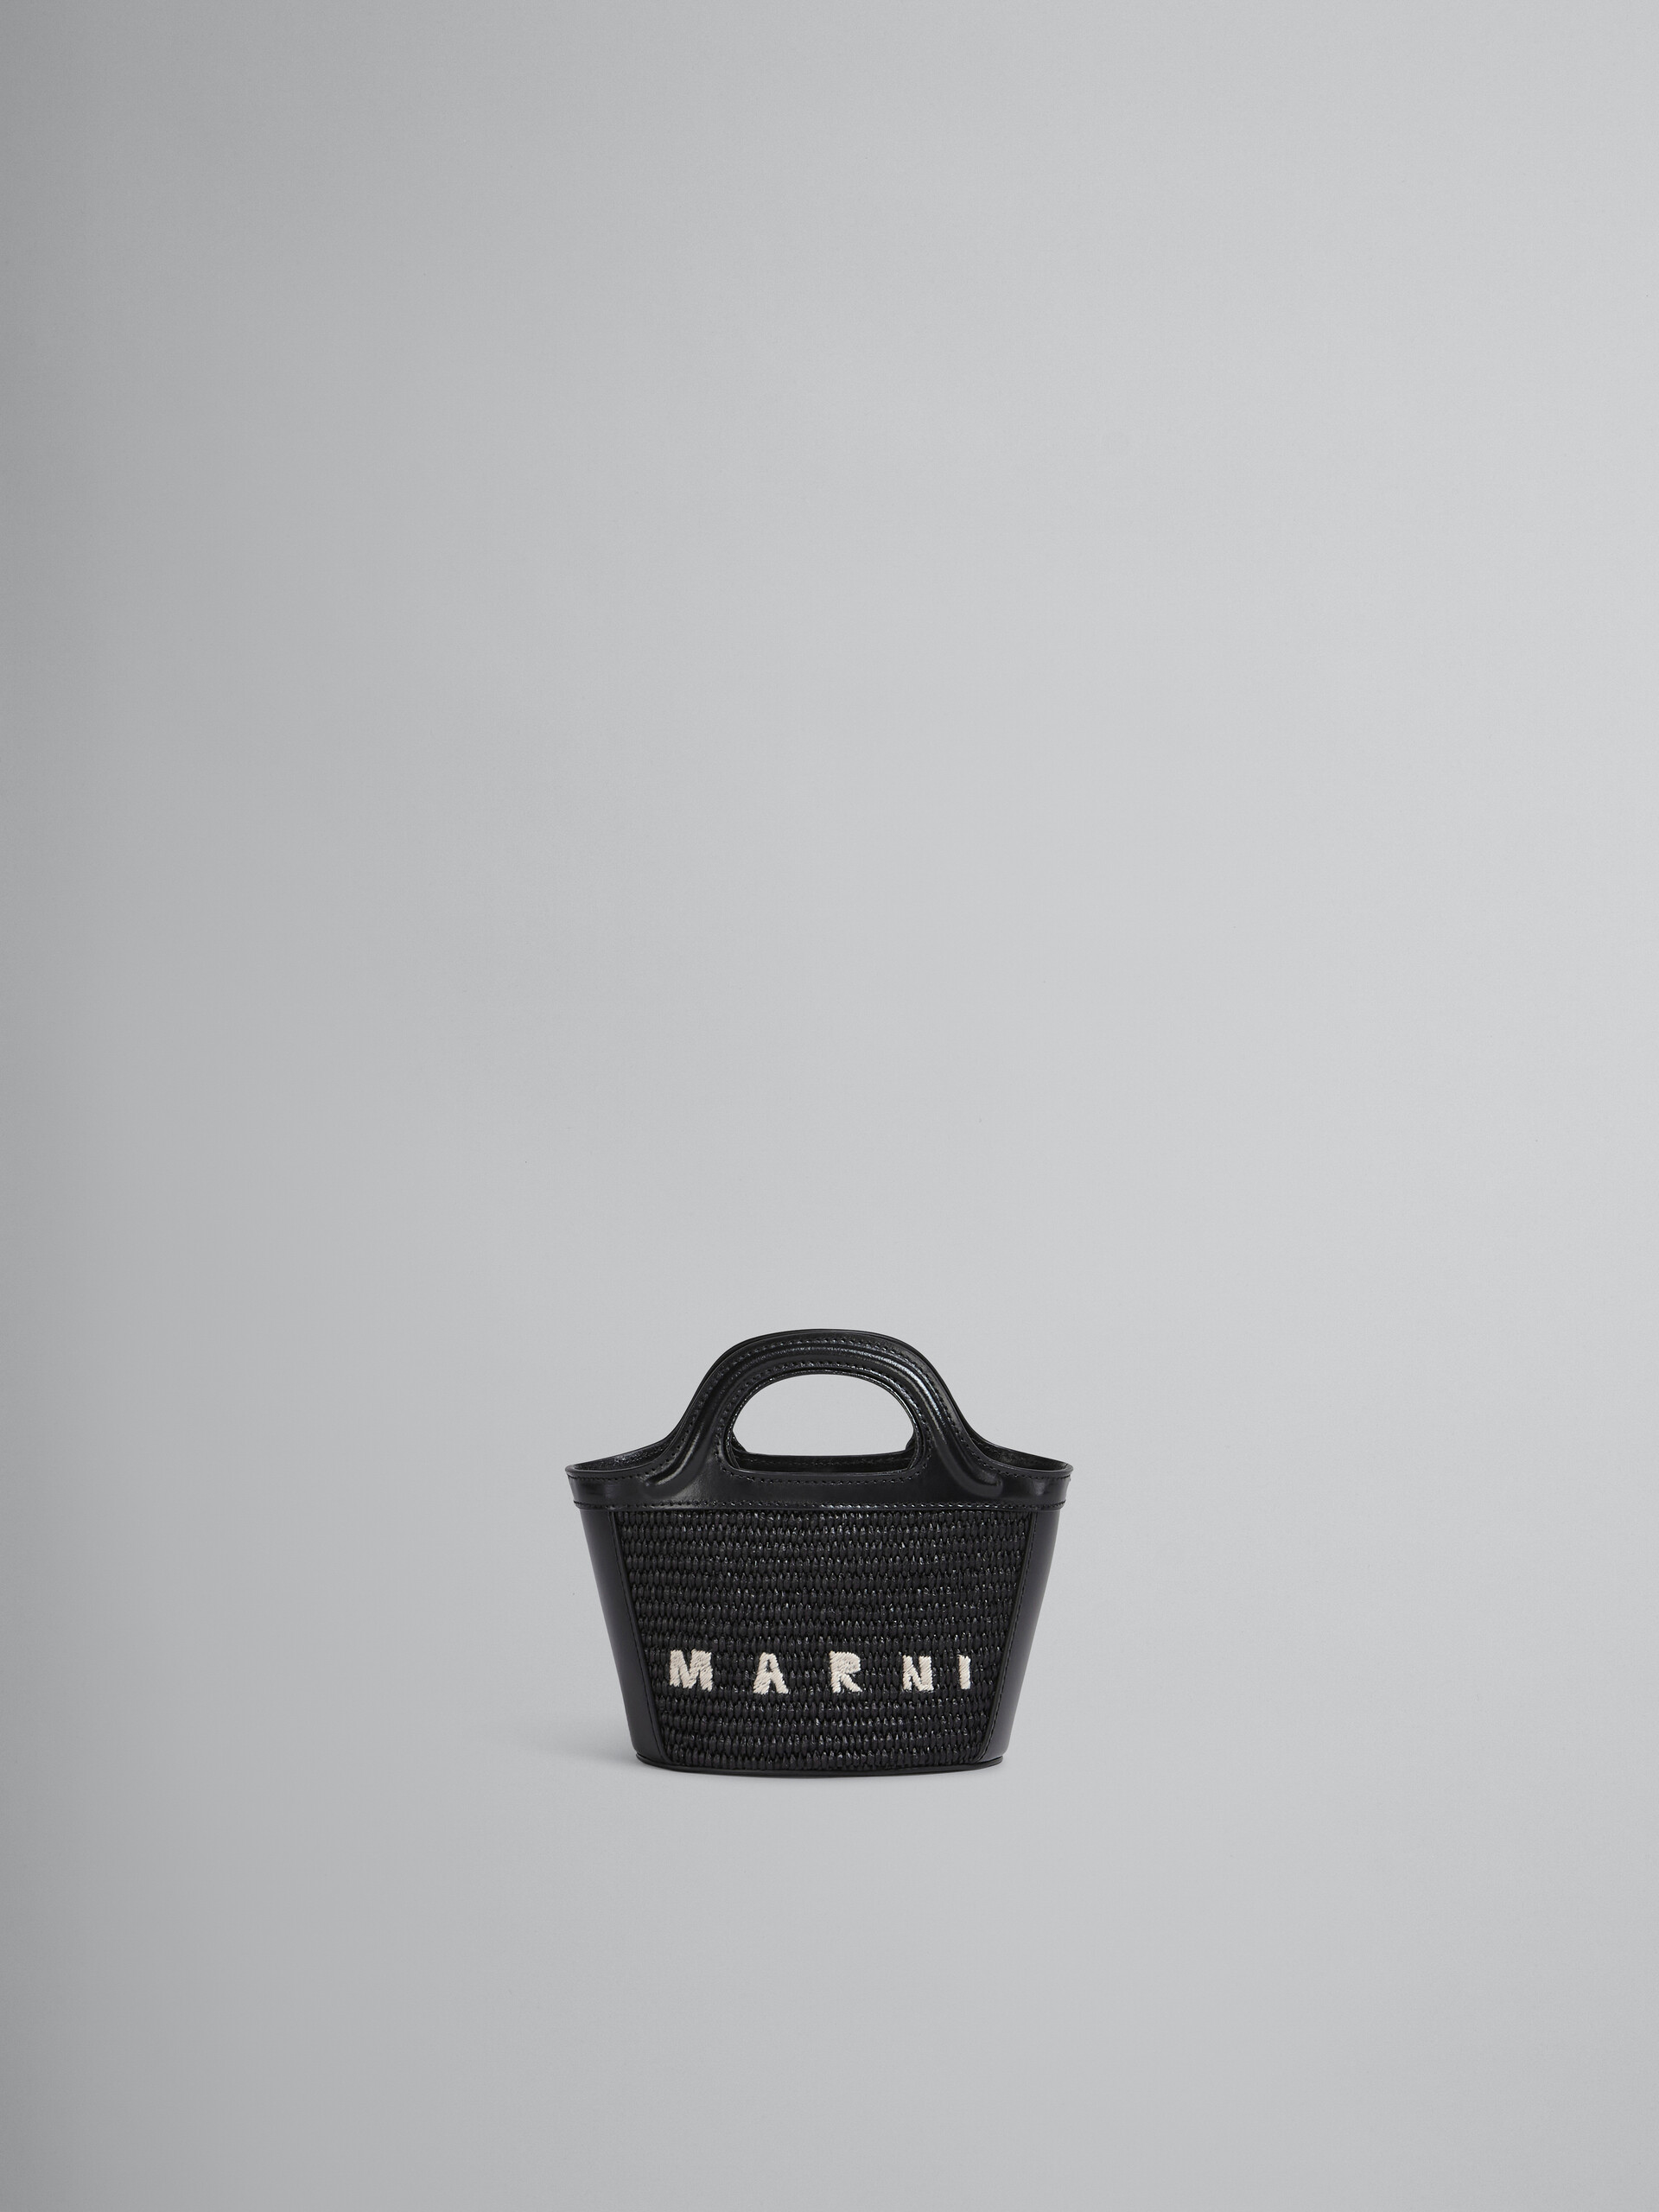 MARNI】2WAY Bag Basket Bag TROPICALIA MICRO BMMP0067Q0 P3860